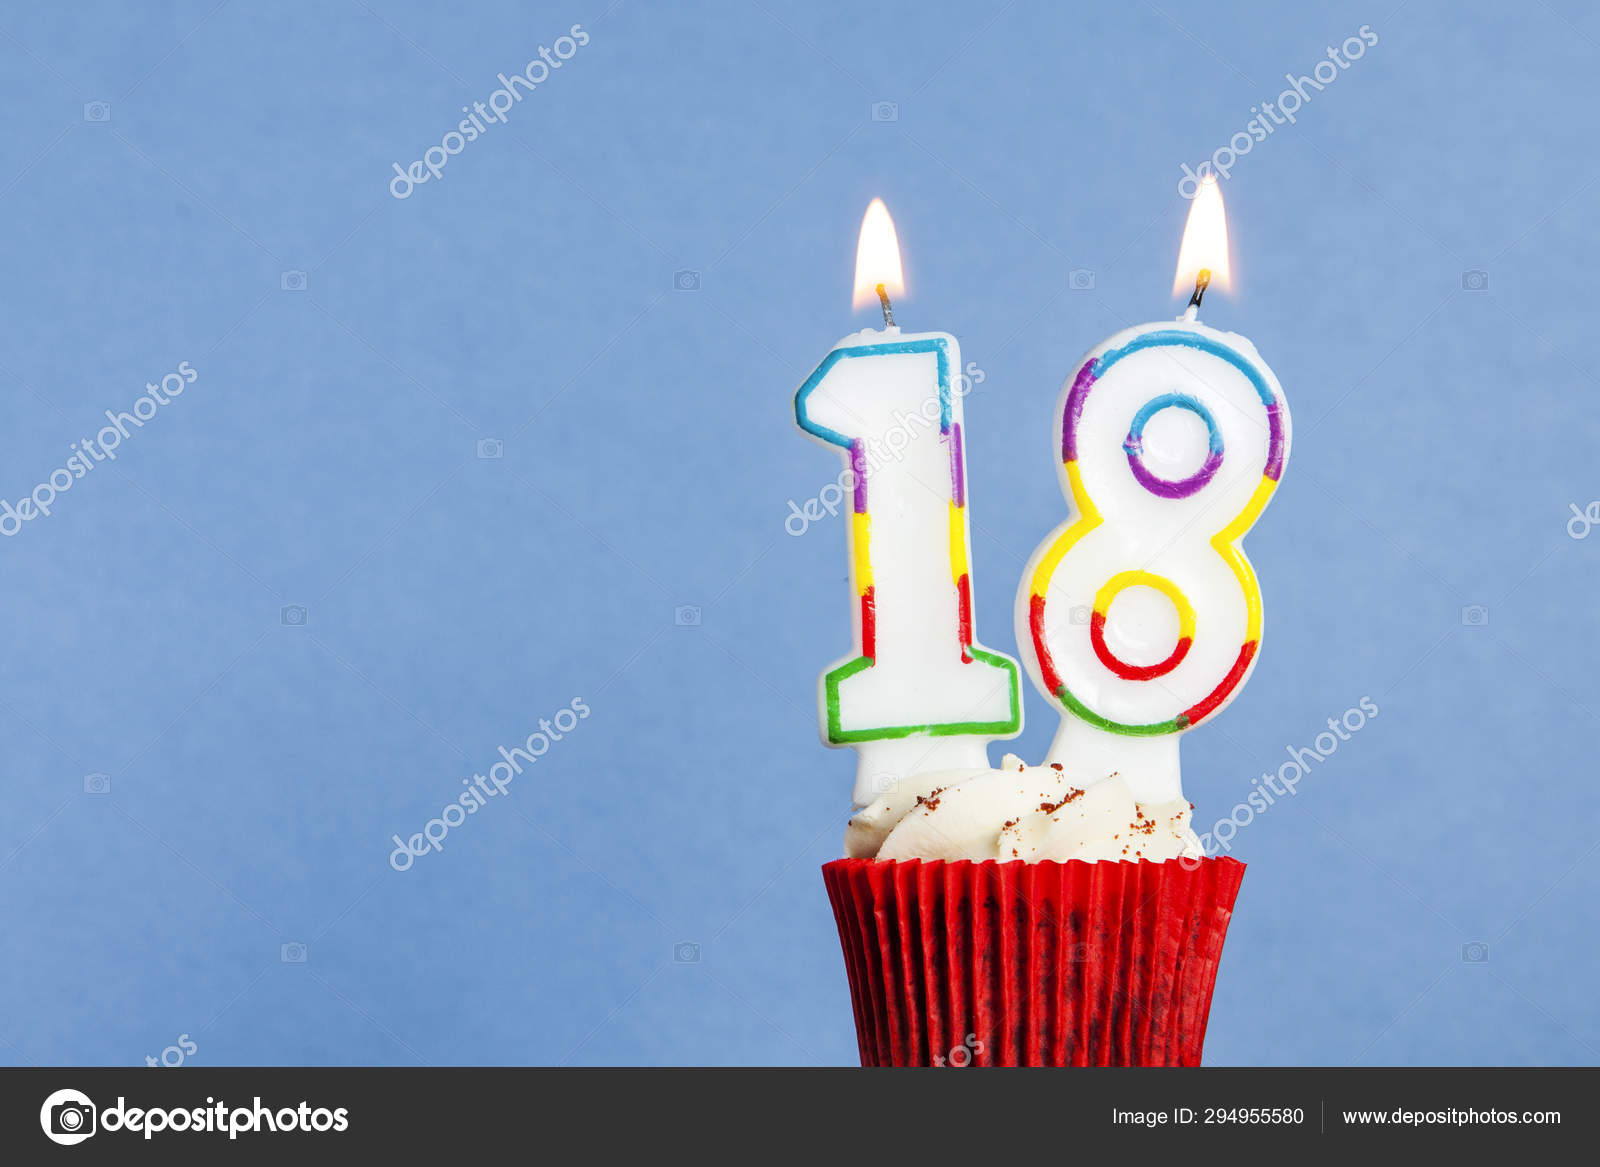 Cumpleaños Número Aniversario De La Vela: 18 Años De Edad Fotos, retratos,  imágenes y fotografía de archivo libres de derecho. Image 57881102